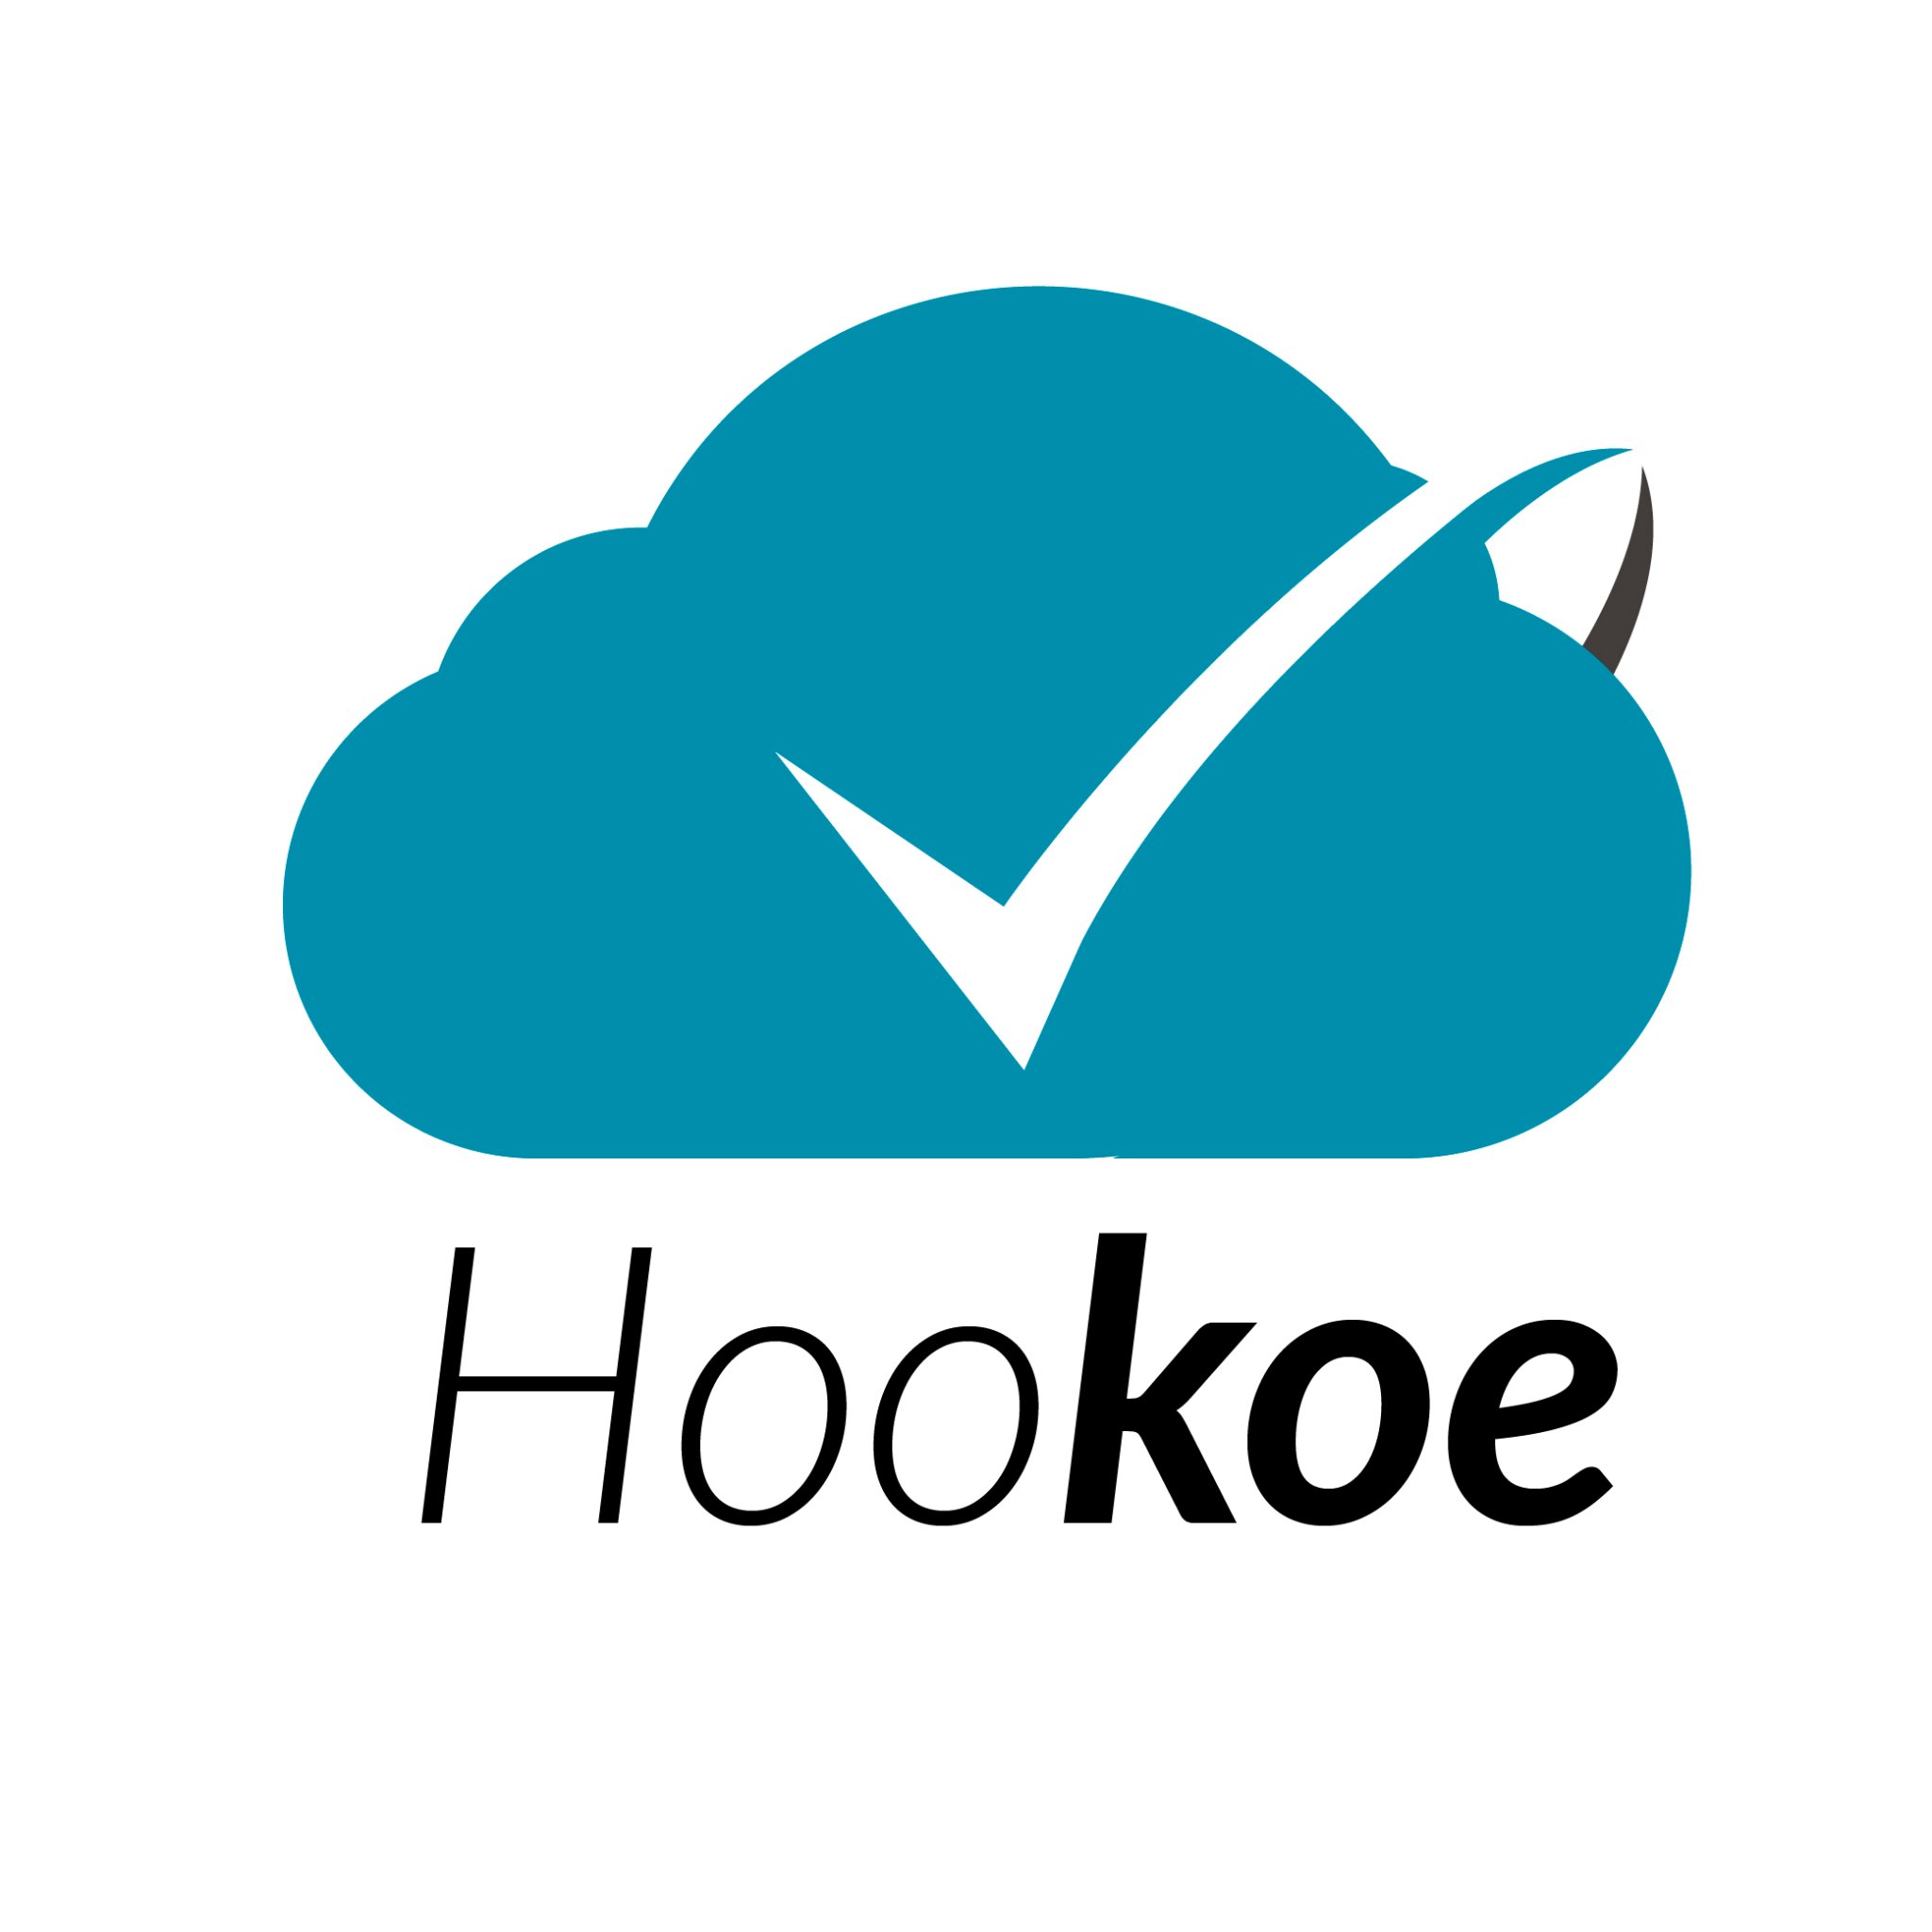 Hookoe